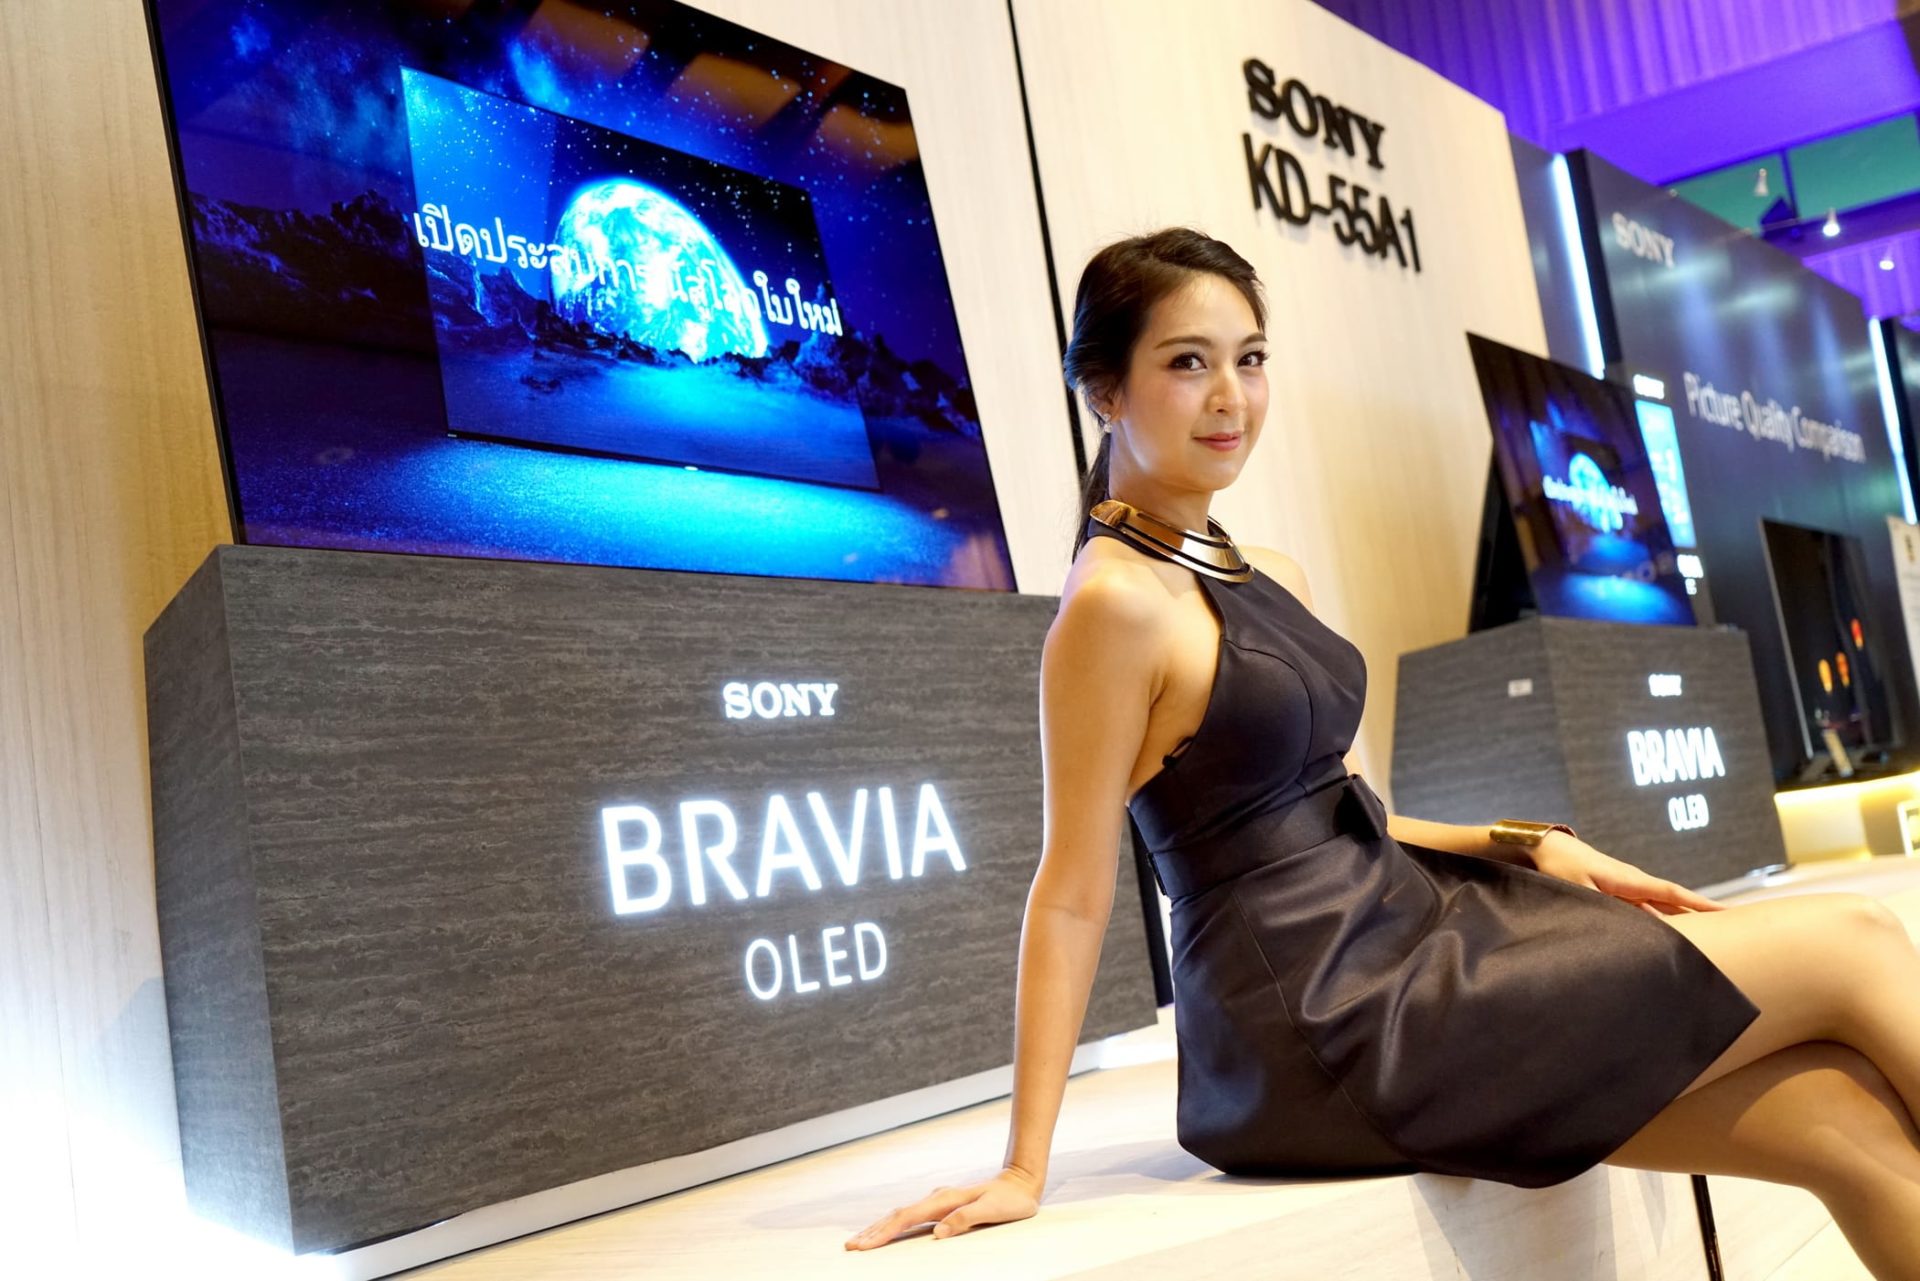 เปิดตัว Sony Bravia รุ่นปี 2017 โชว์ทีวีตัวเทพ OLED ลำโพงในจอ!